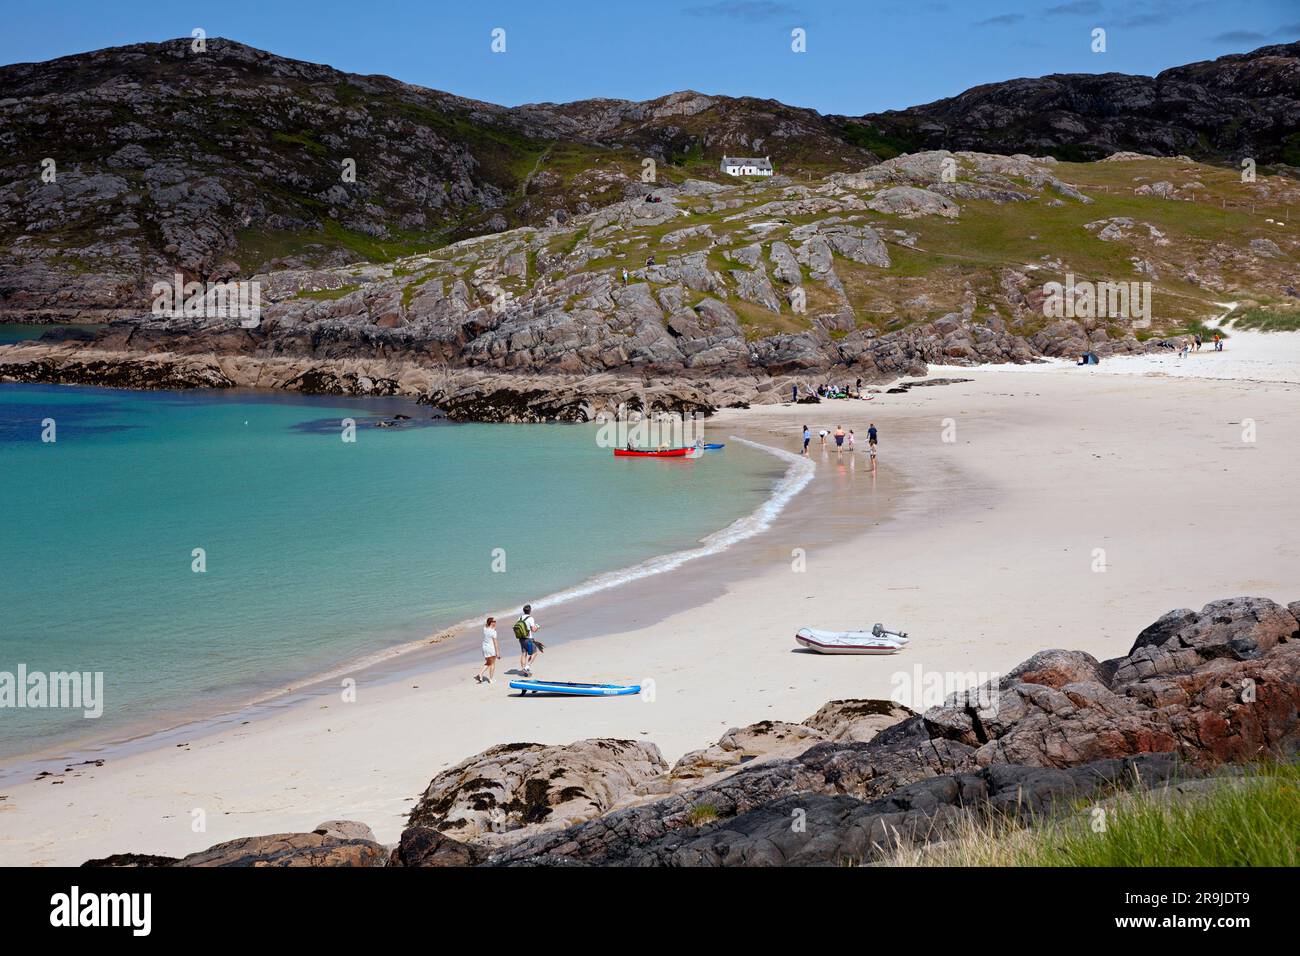 Strand in Achmelvich in Assynt, Sutherland, Nordwest Schottland, Achmelvich Bay, Highlands. Schottland, Großbritannien Stockfoto